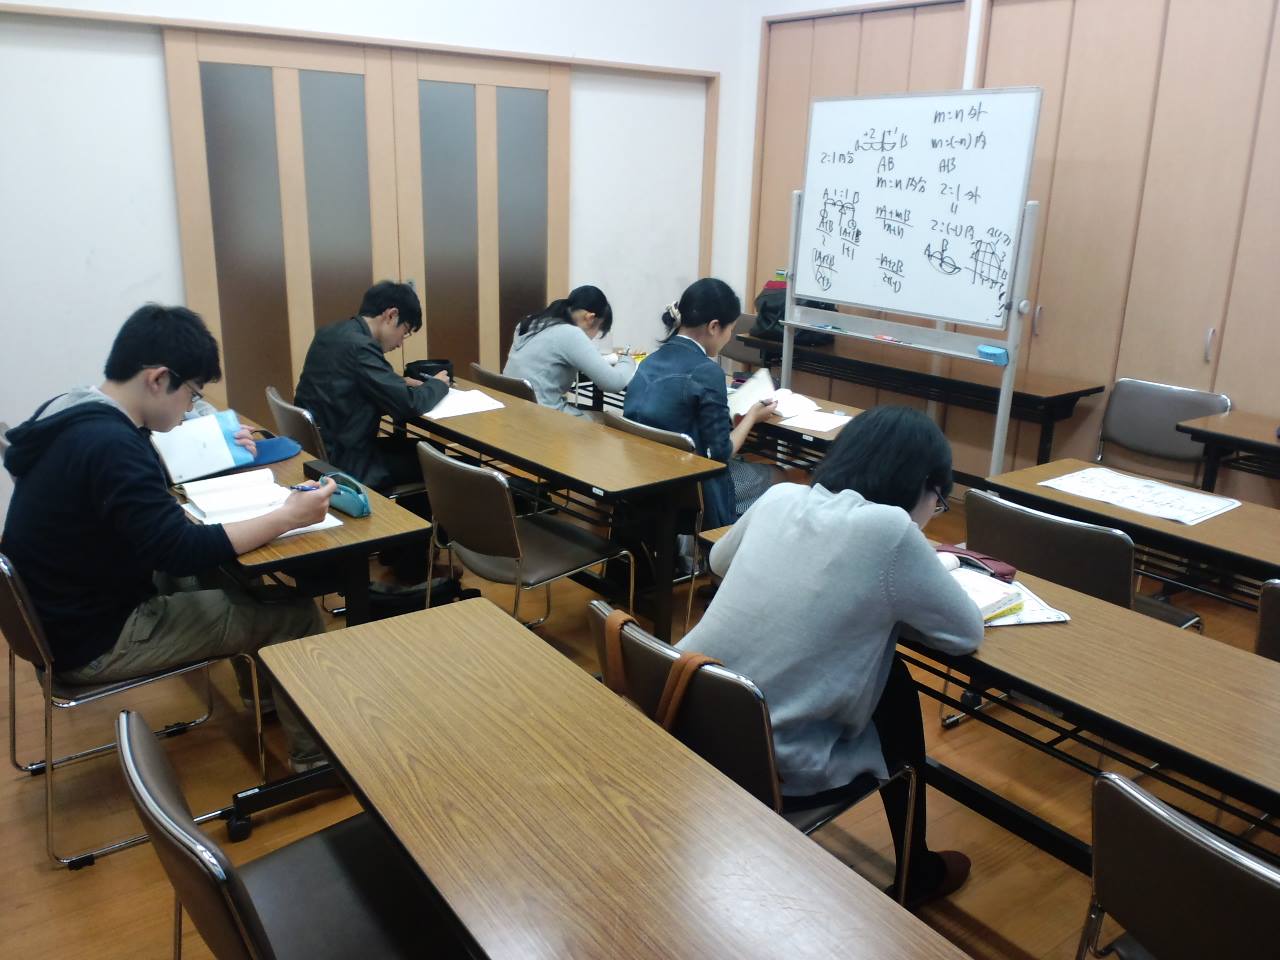 朝倉街道数学教室